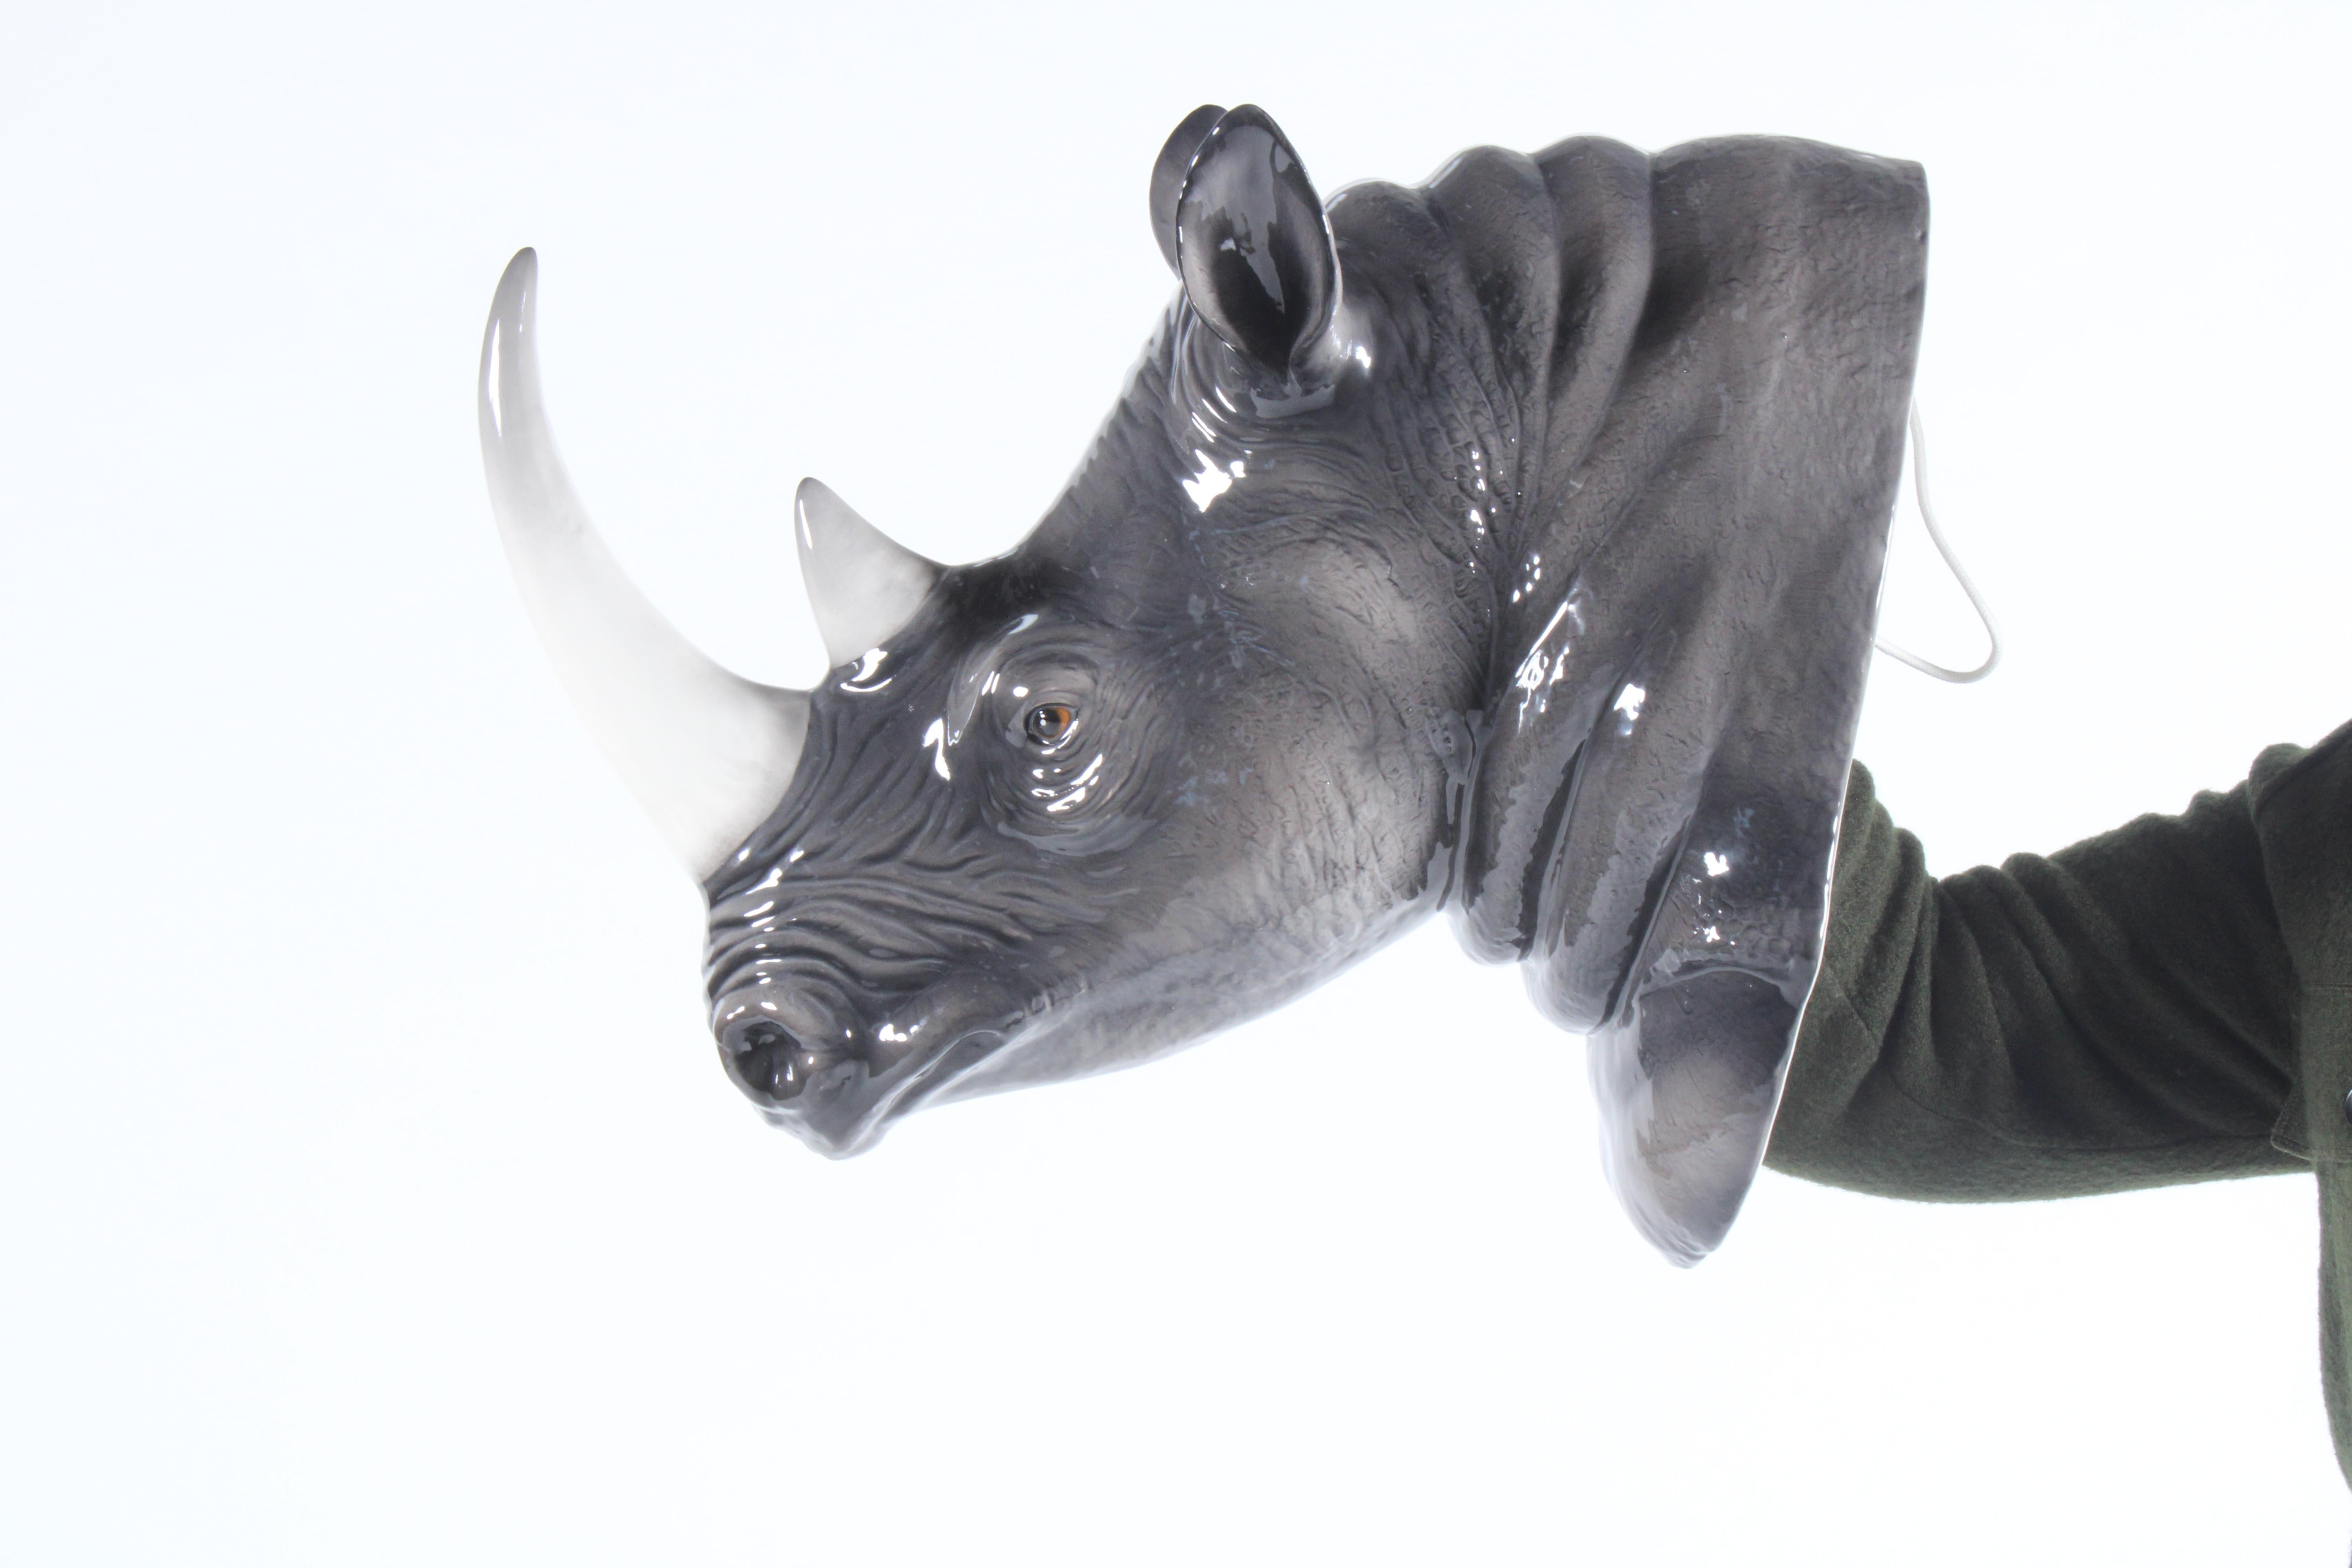 Magnifique buste de rhinocéros en céramique italienne vintage. Cette charmante et délicieuse sculpture est une véritable œuvre d'art et est extrêmement réaliste. Fabriqué à Bassano en Italie, il présente des détails fabuleux et est réalisé selon les